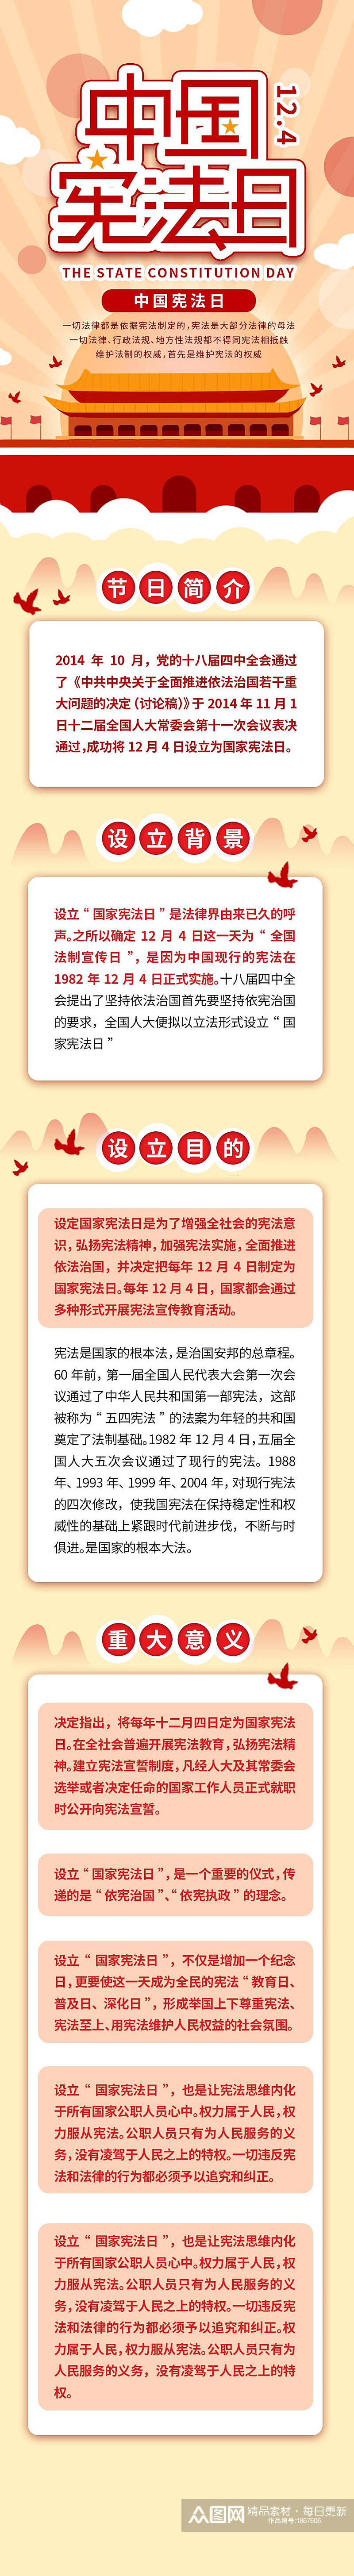 中国宪法日信息报告手机H5长图素材